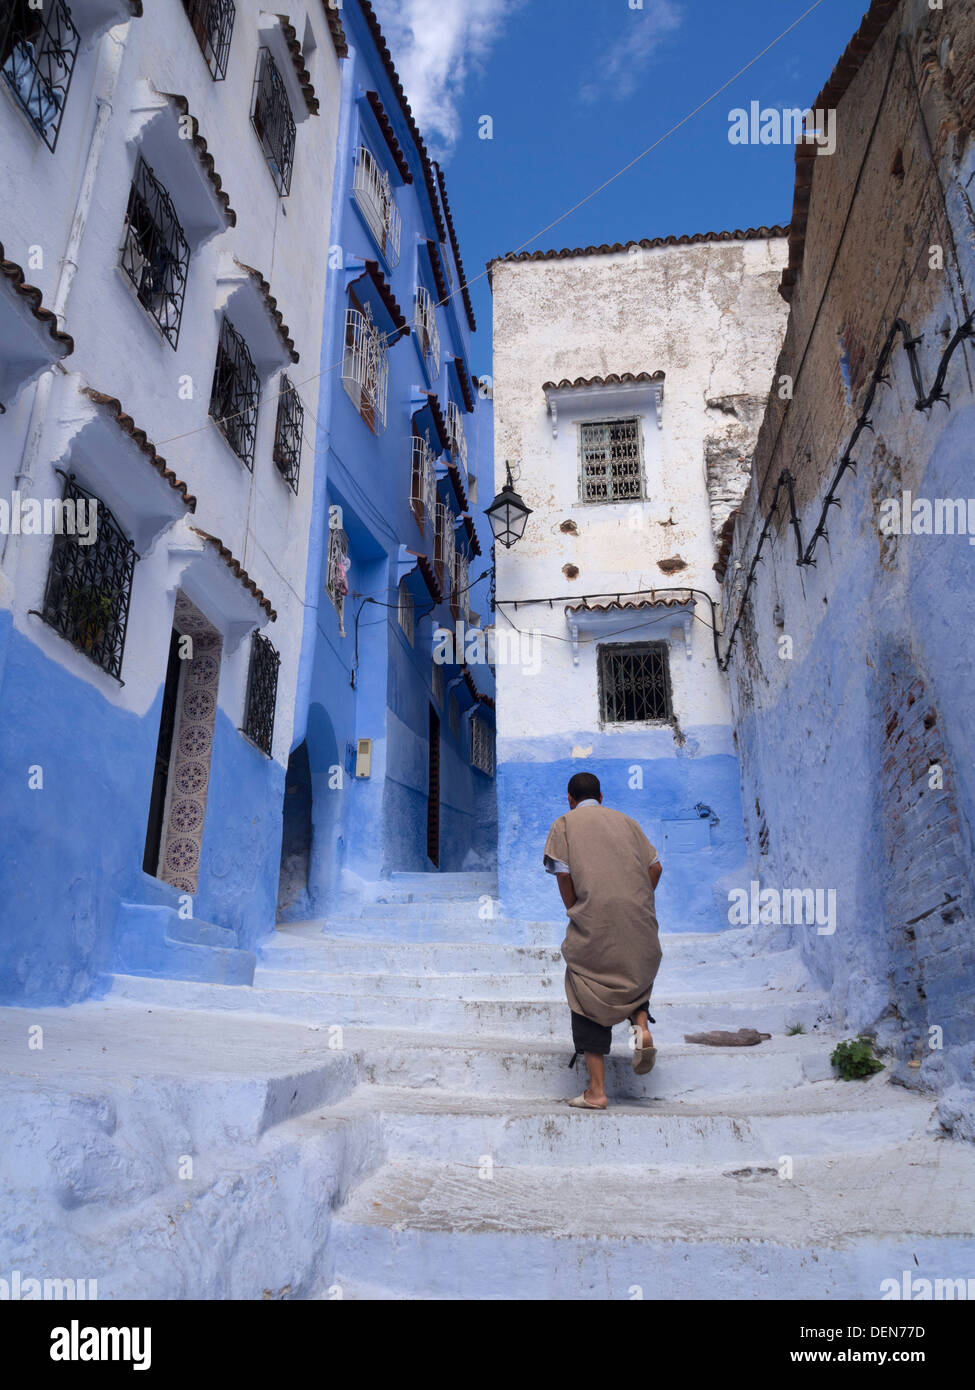 Personne marche dans une rue avec des maisons peintes en bleu clair à Chefchaouen, Maroc Banque D'Images